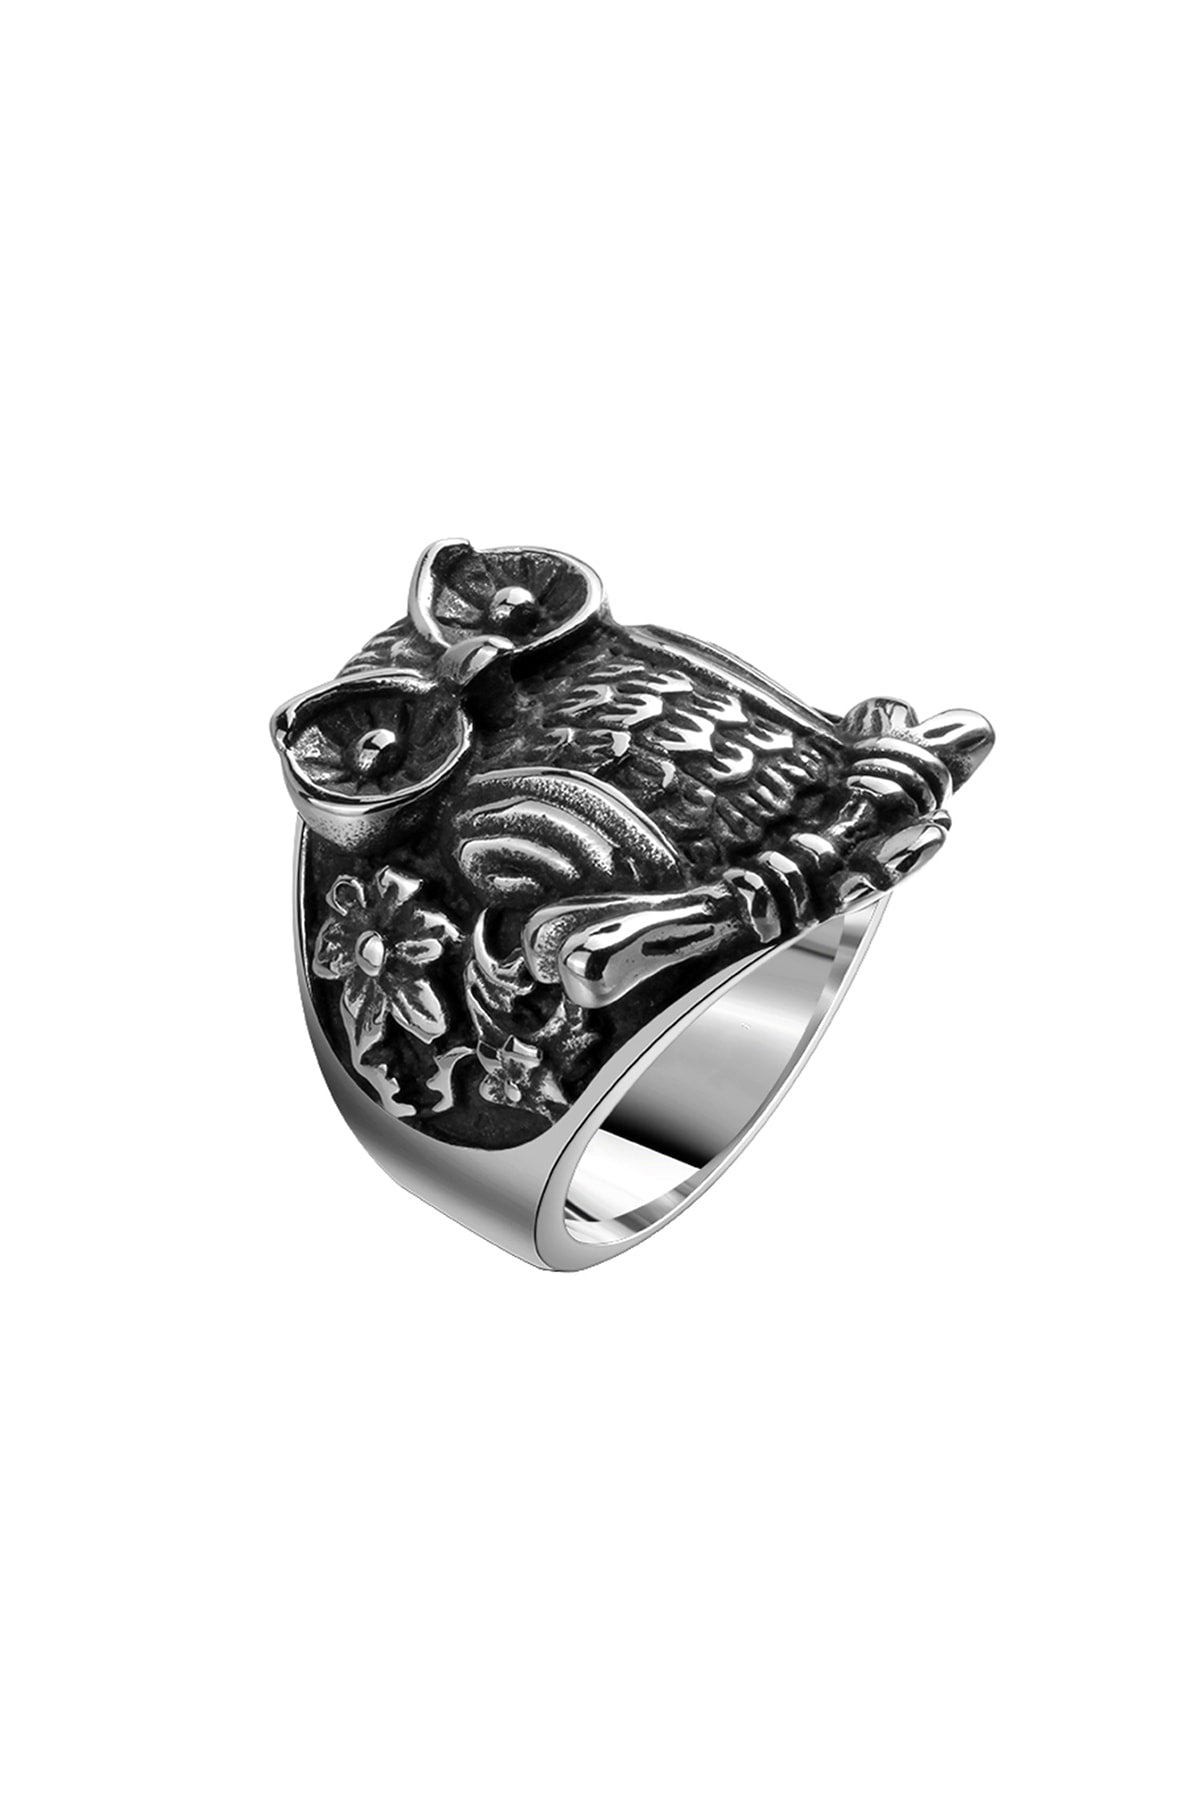 Gomaya Owl Stainless Steel Ring